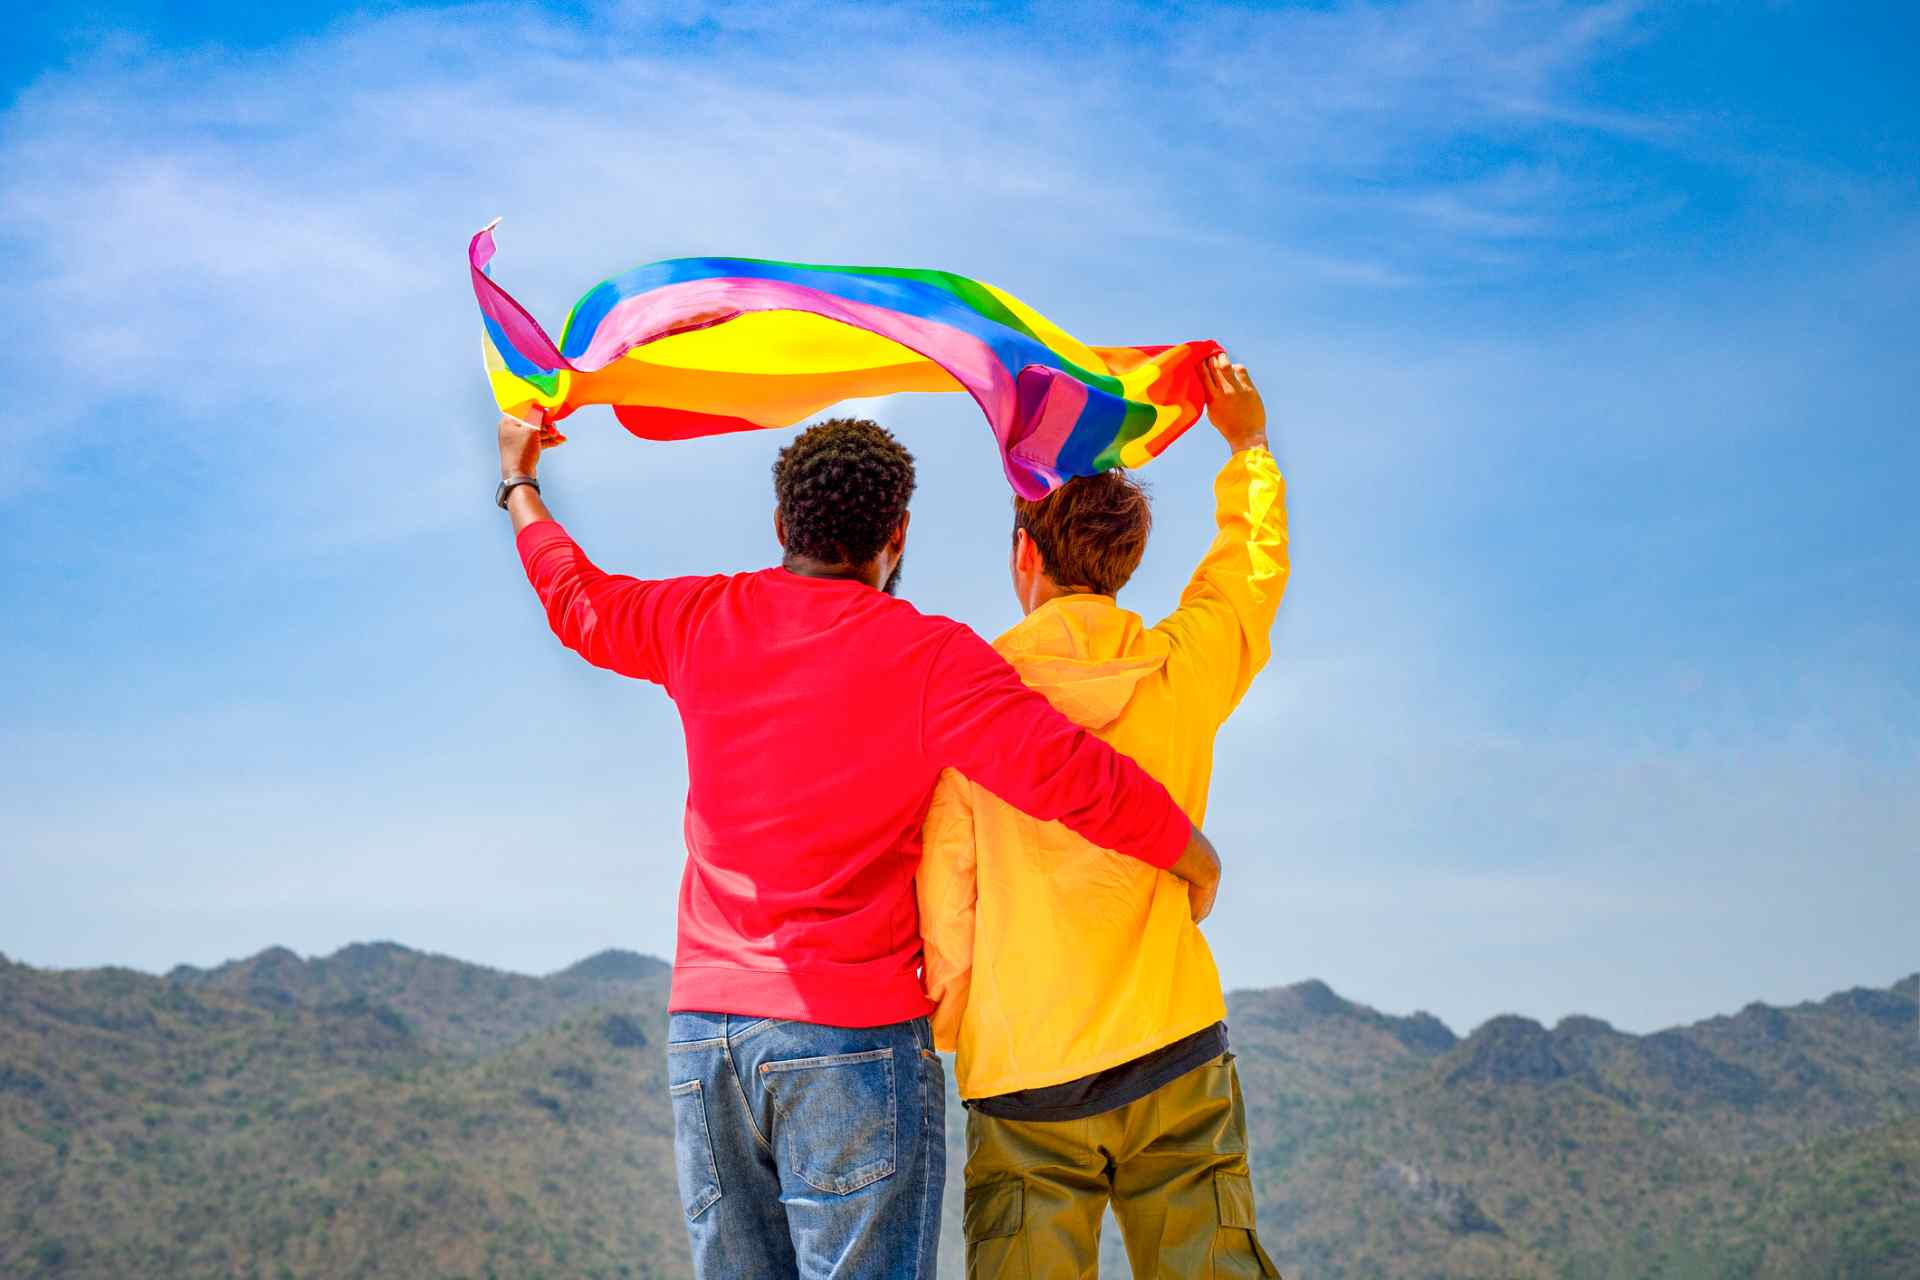 Guide pour choisir une destination de voyage gay friendly